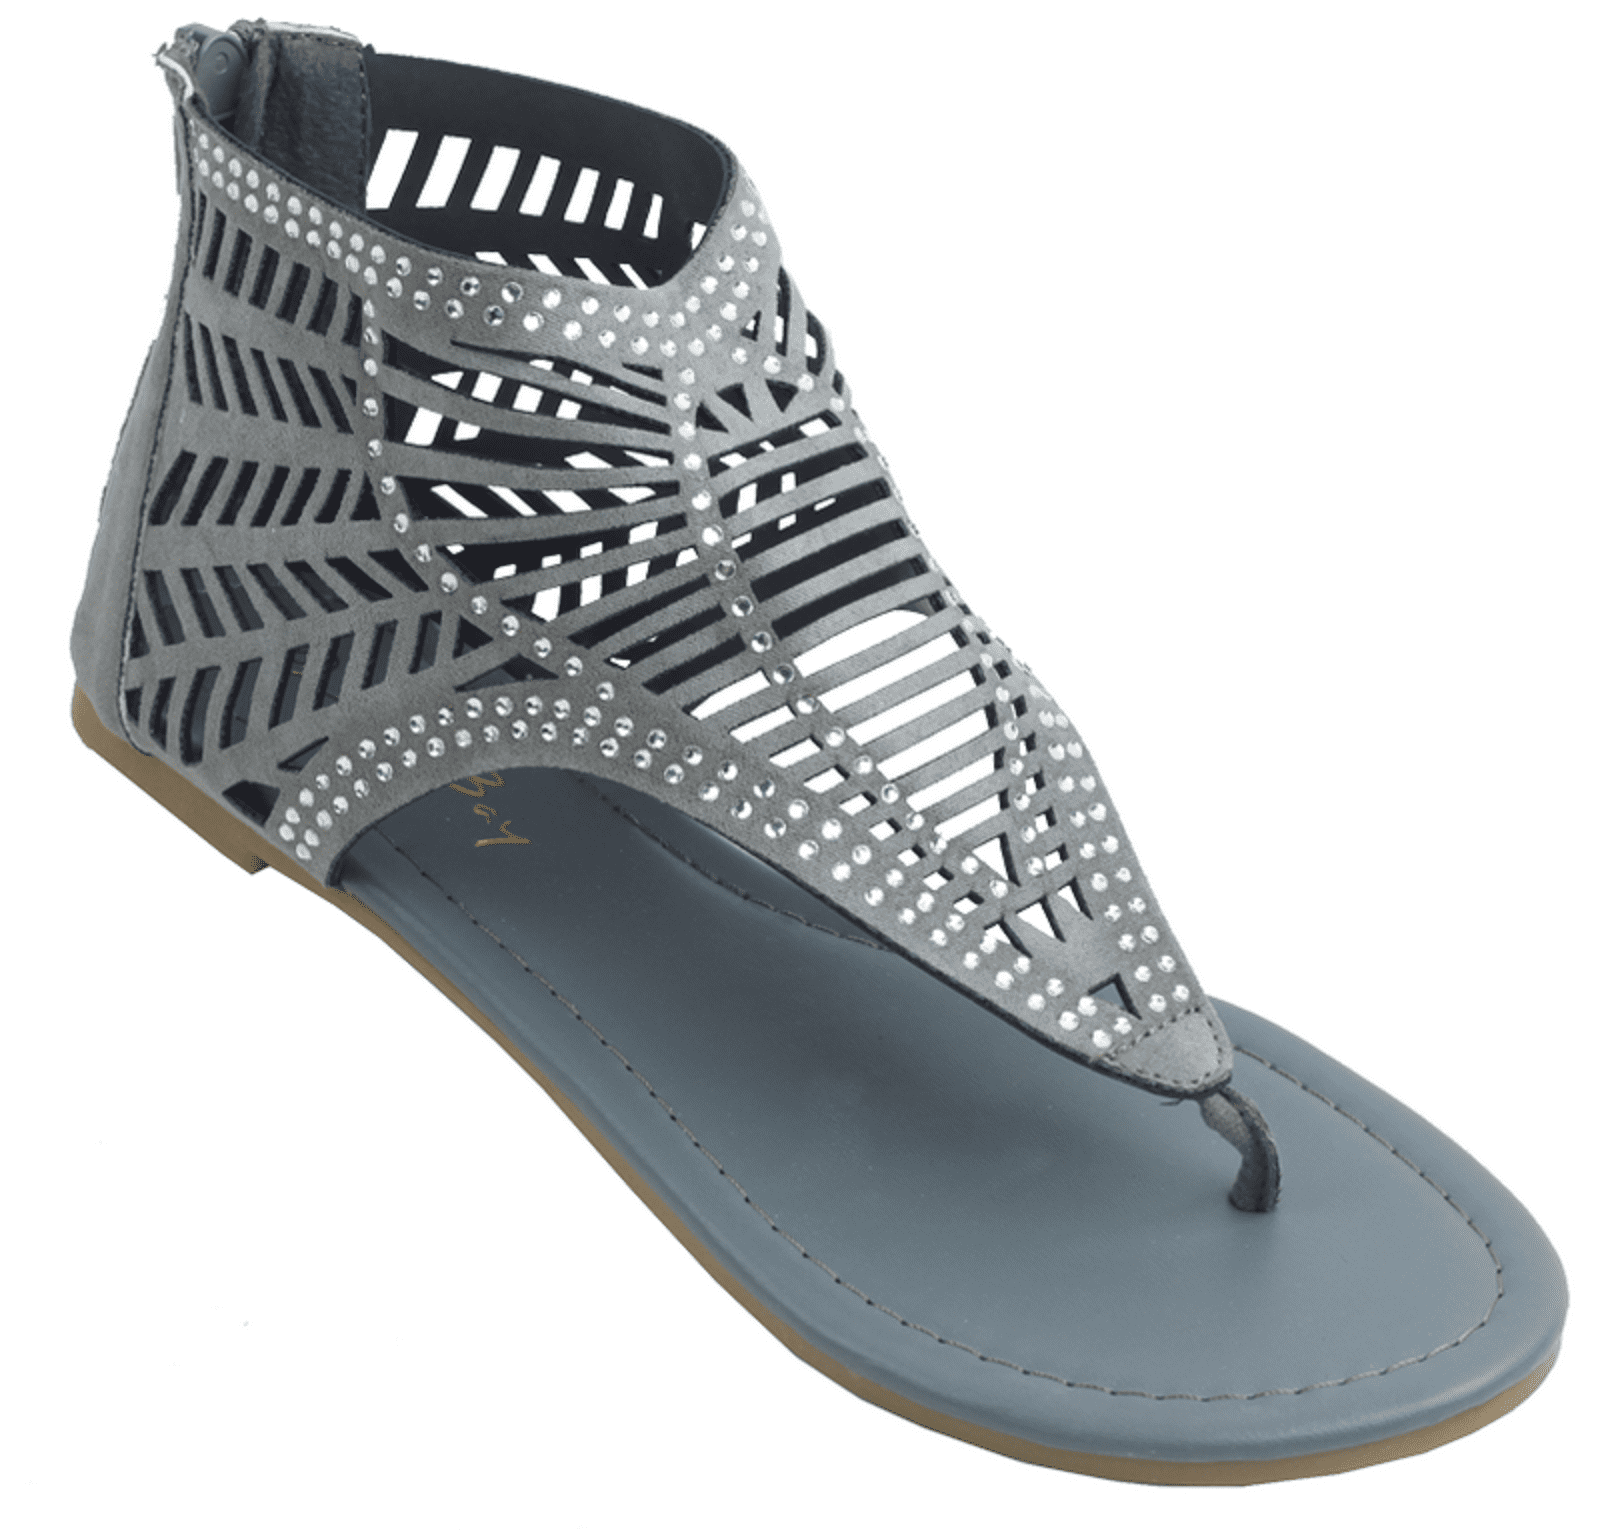 Dainzusyful Sandals for Women Leopard Flip Flop Gladiator Flat Sandals Beach Open Toe Ankle Summer Thongs Zipper Sandals 